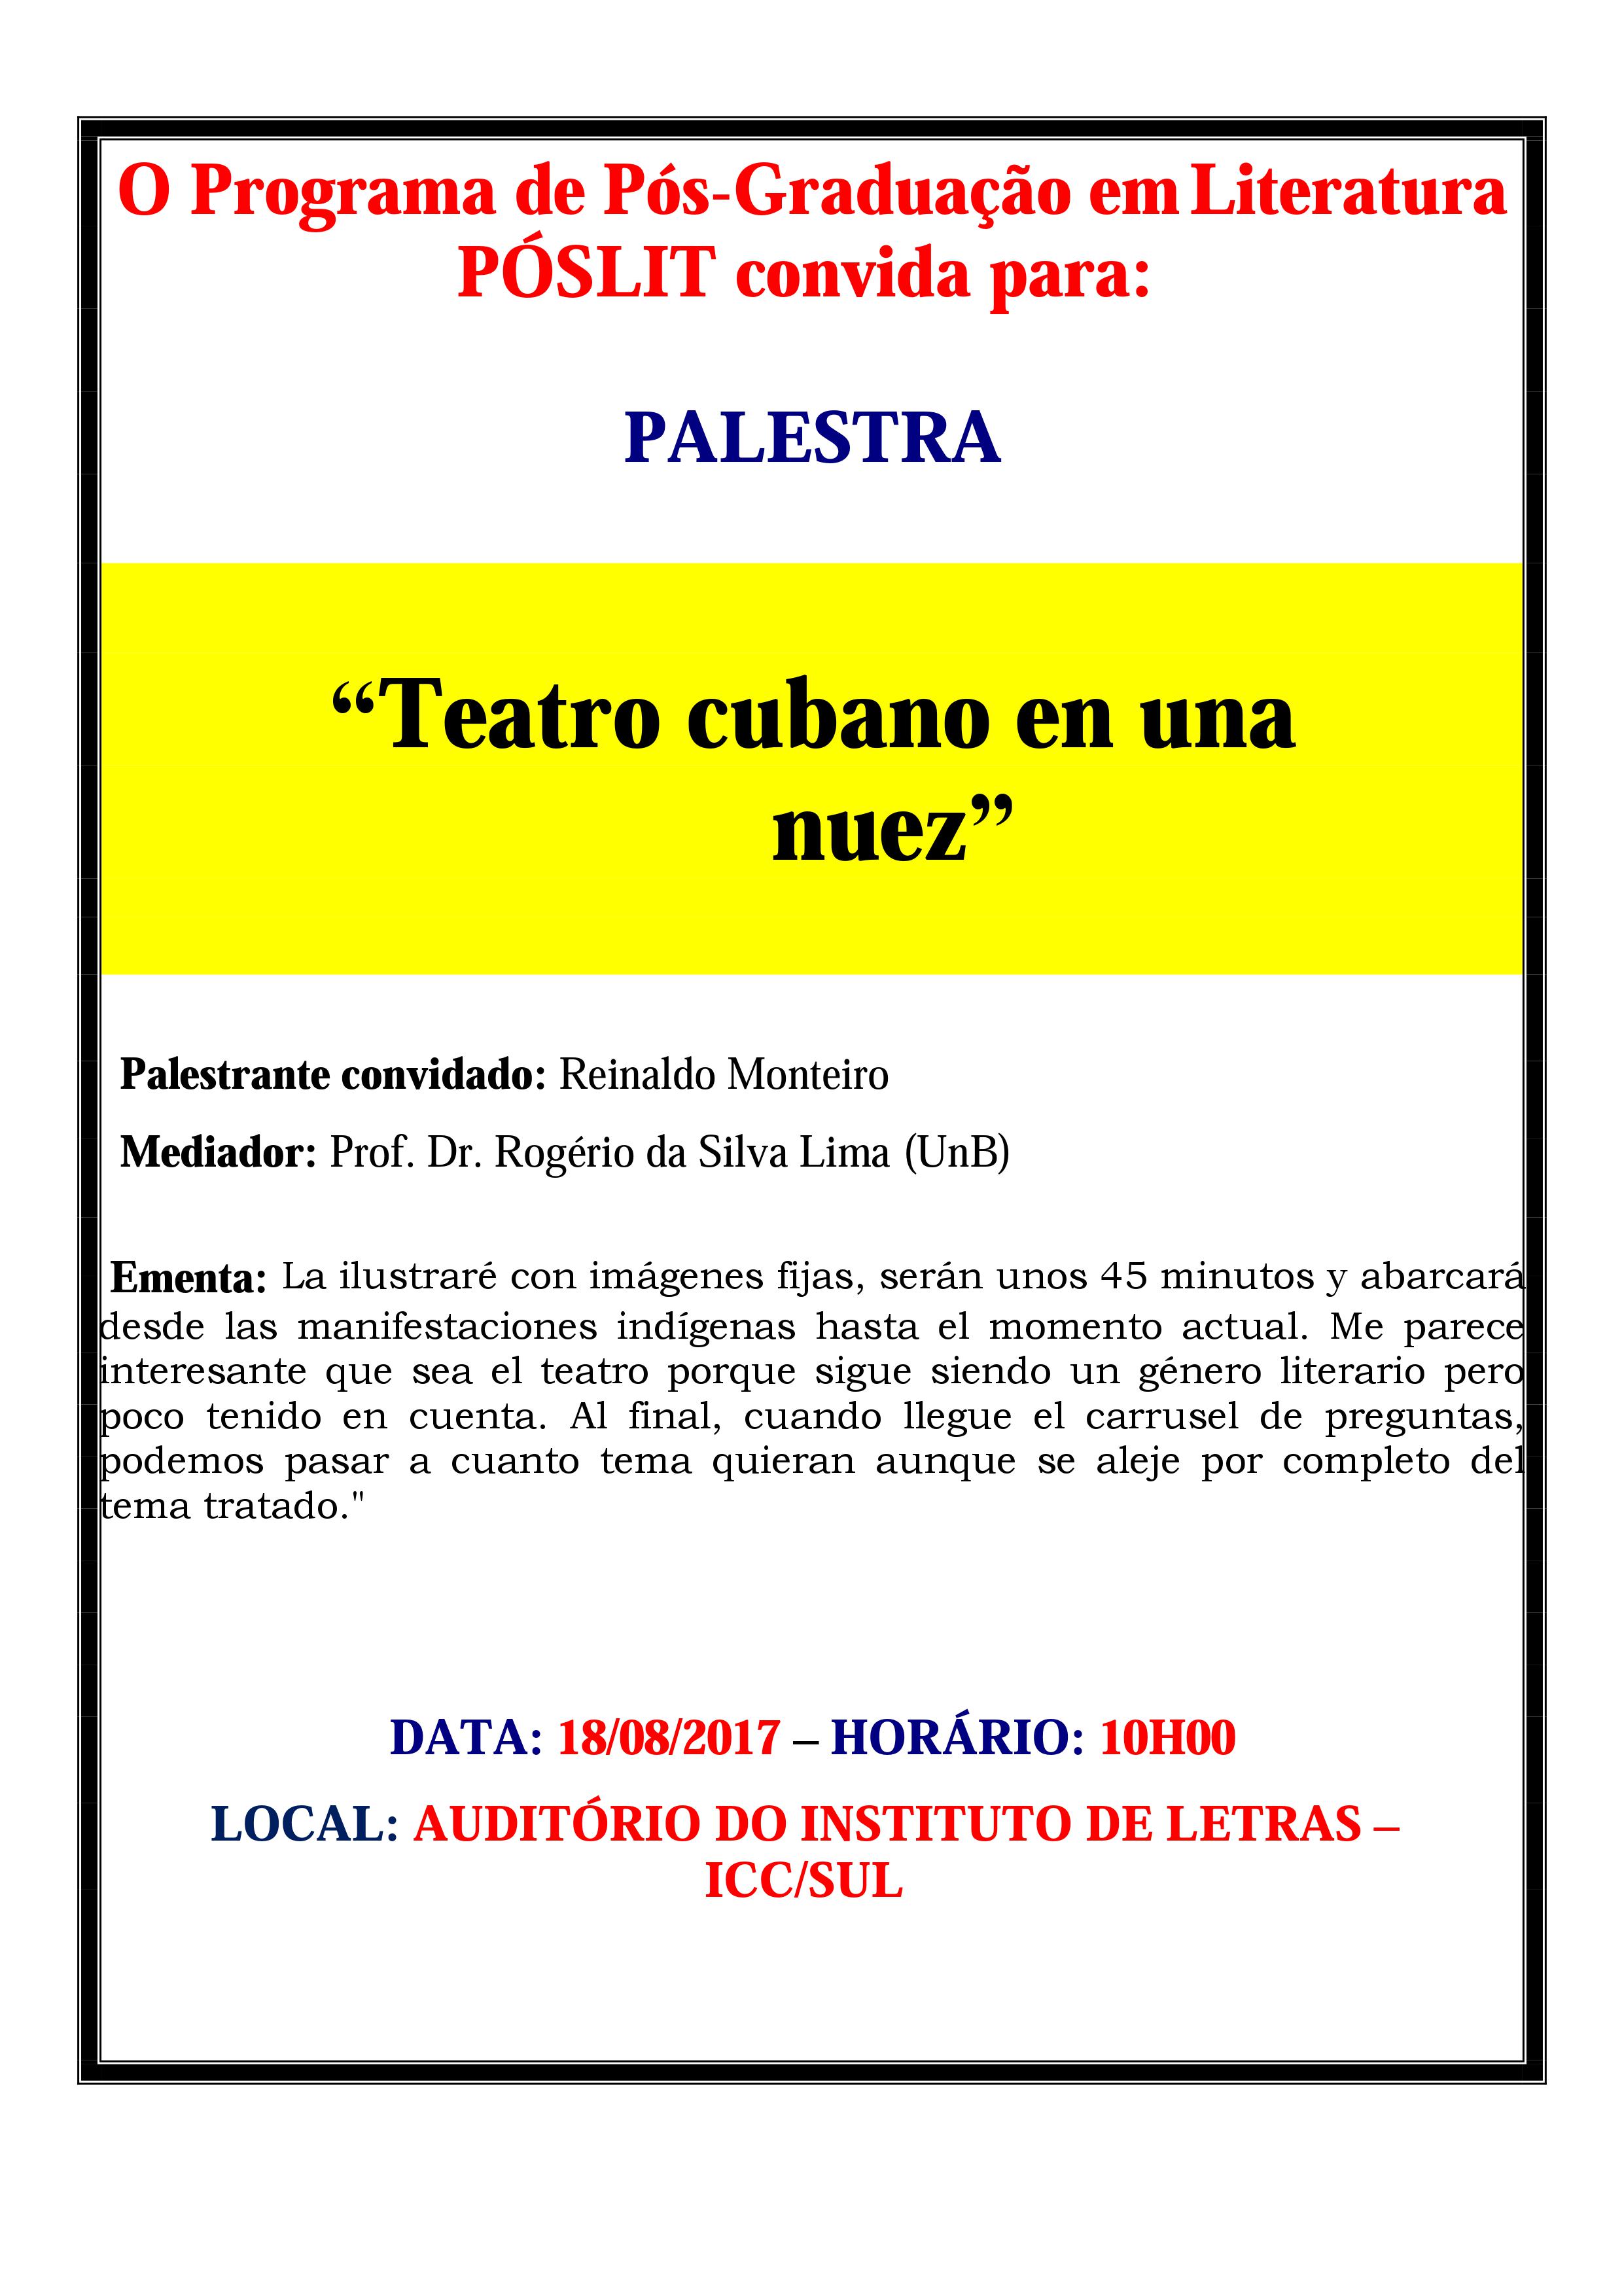 Palestra: Teatro cubano en una nuez